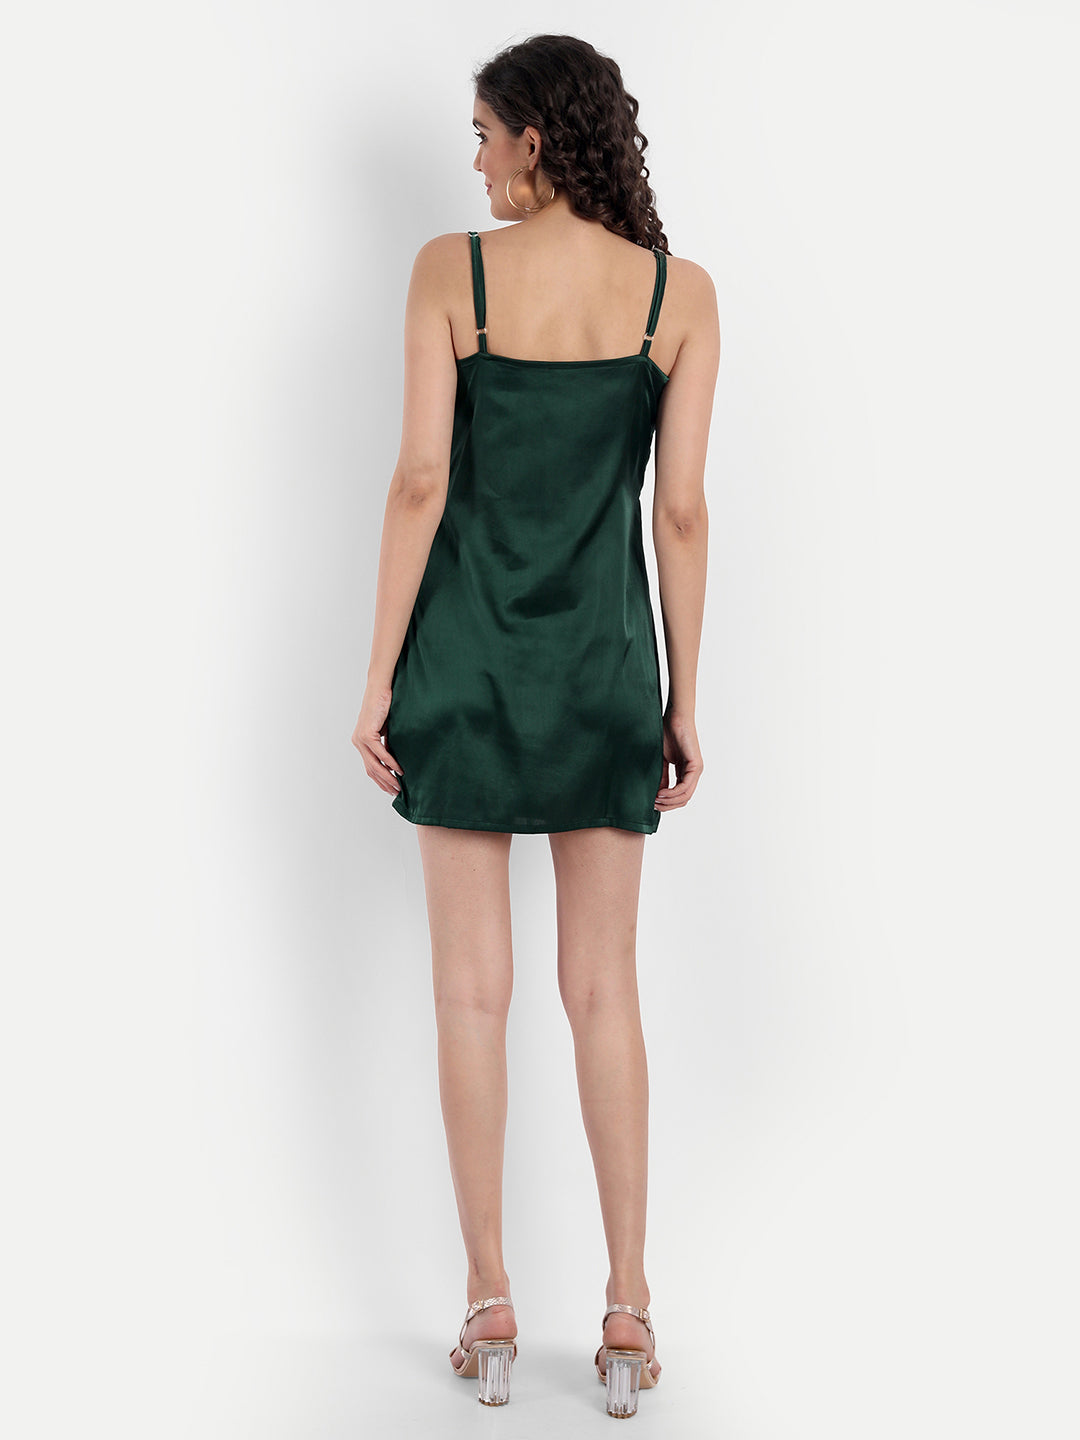 Missy green satin dress - Emprall 